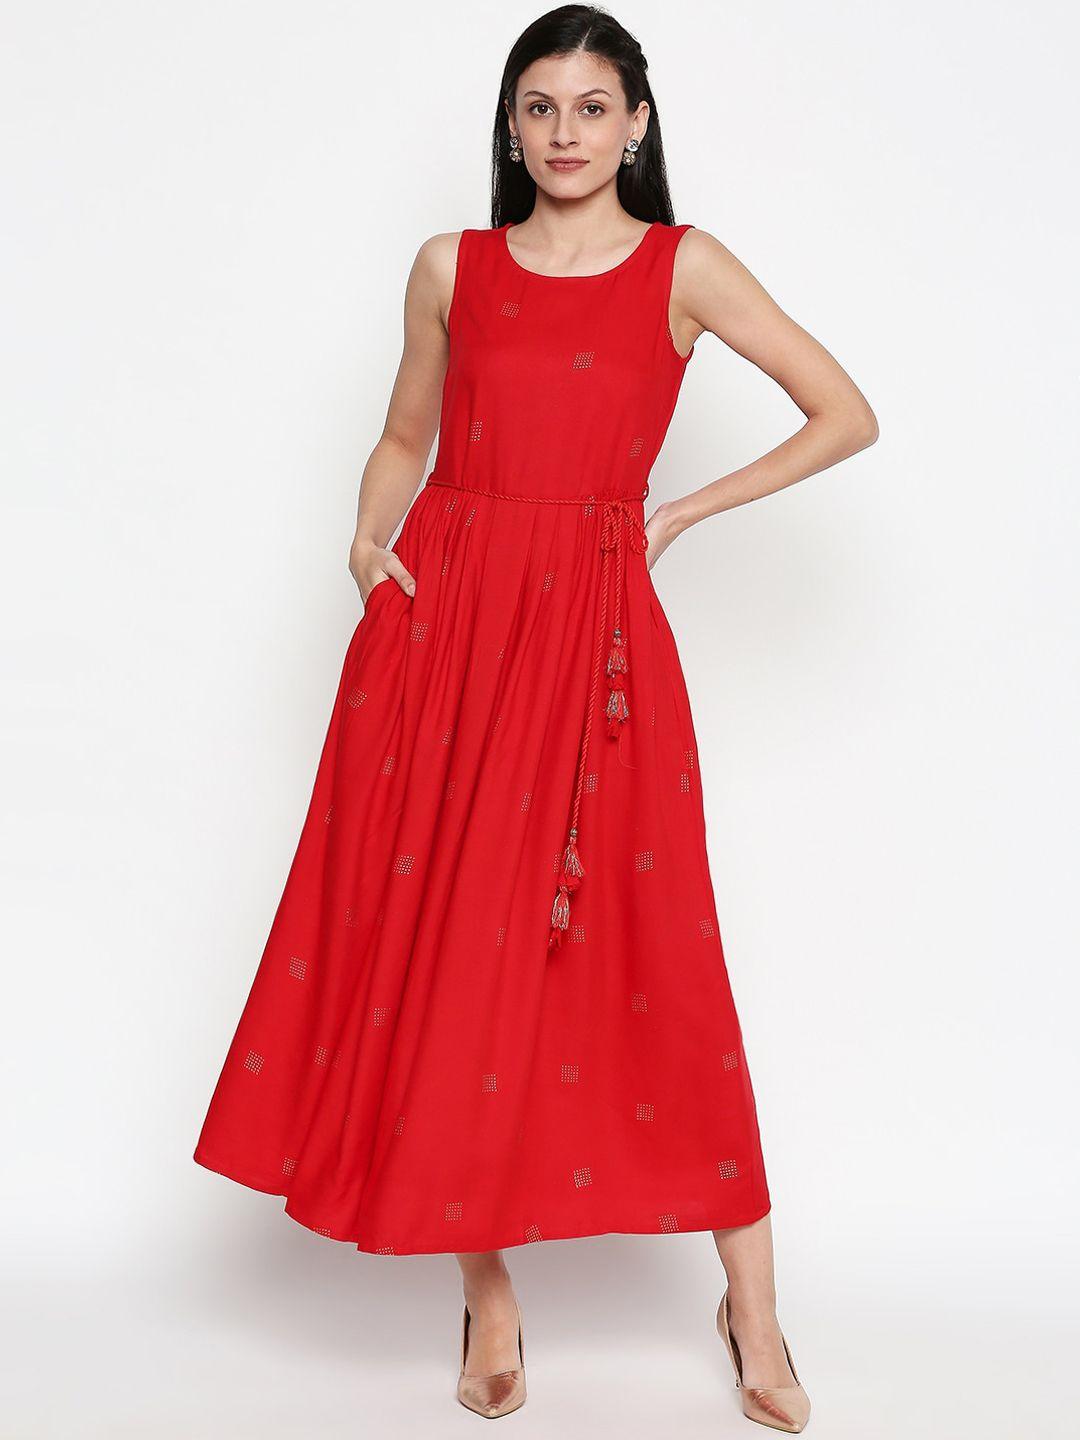 akkriti by pantaloons women red embellished maxi dress